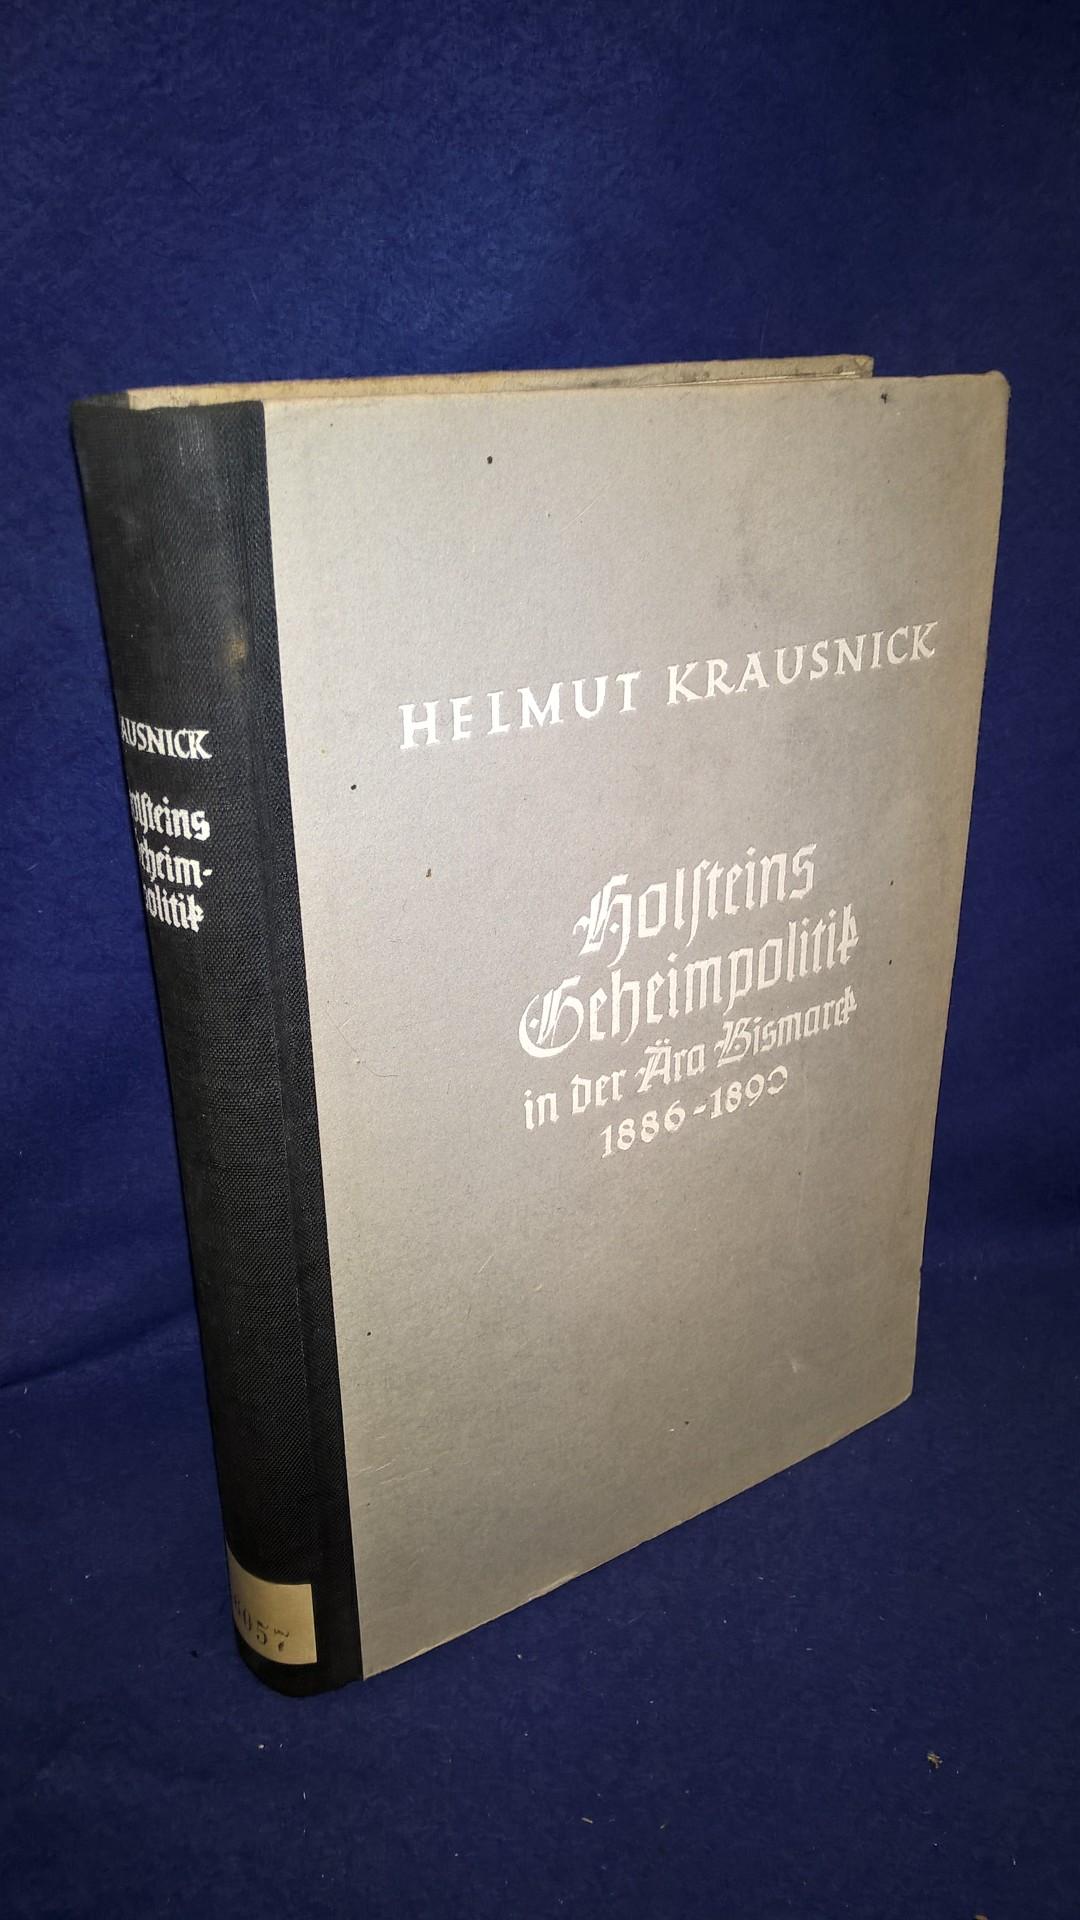 Hollsteins Geheimpolitik in der Ära Bismarck 1886-1890